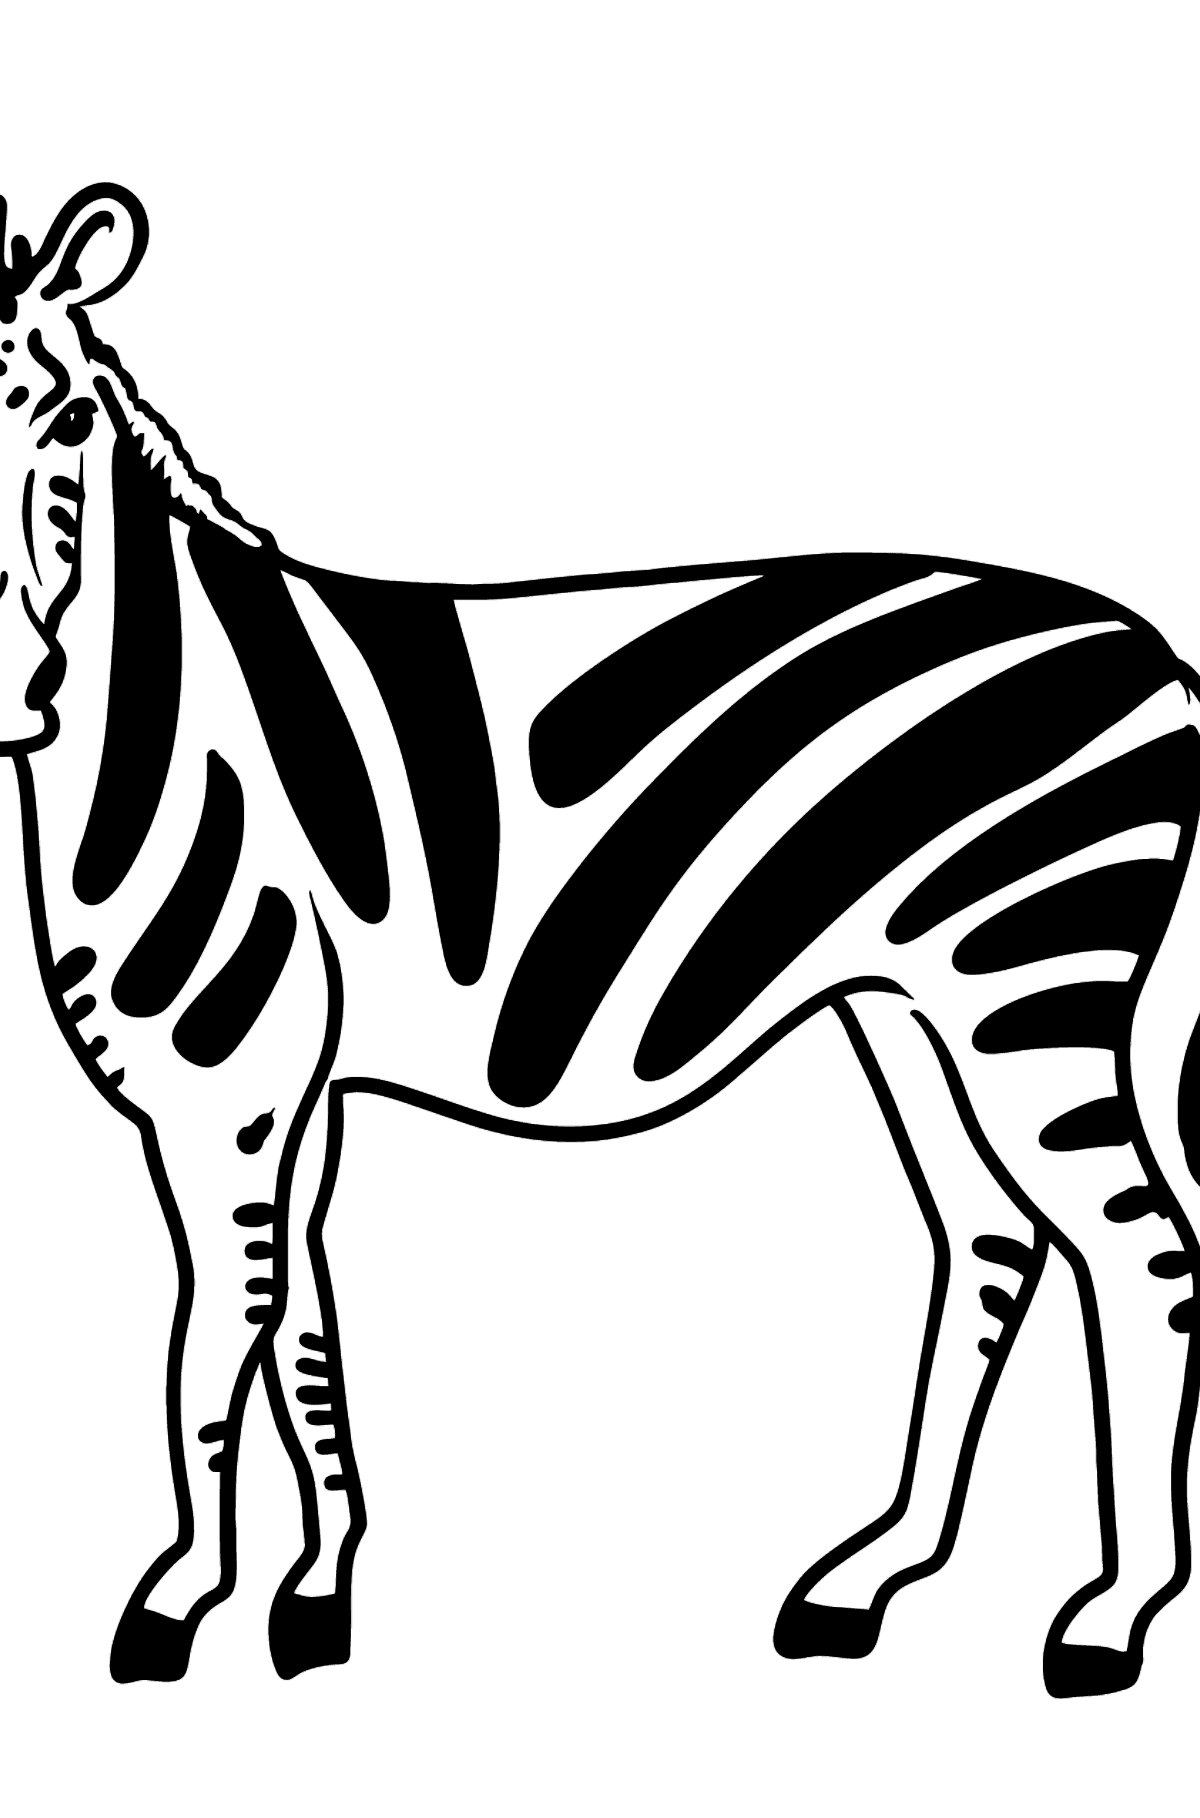 Kolorowanka Zebra dla maluchów - Kolorowanki dla dzieci